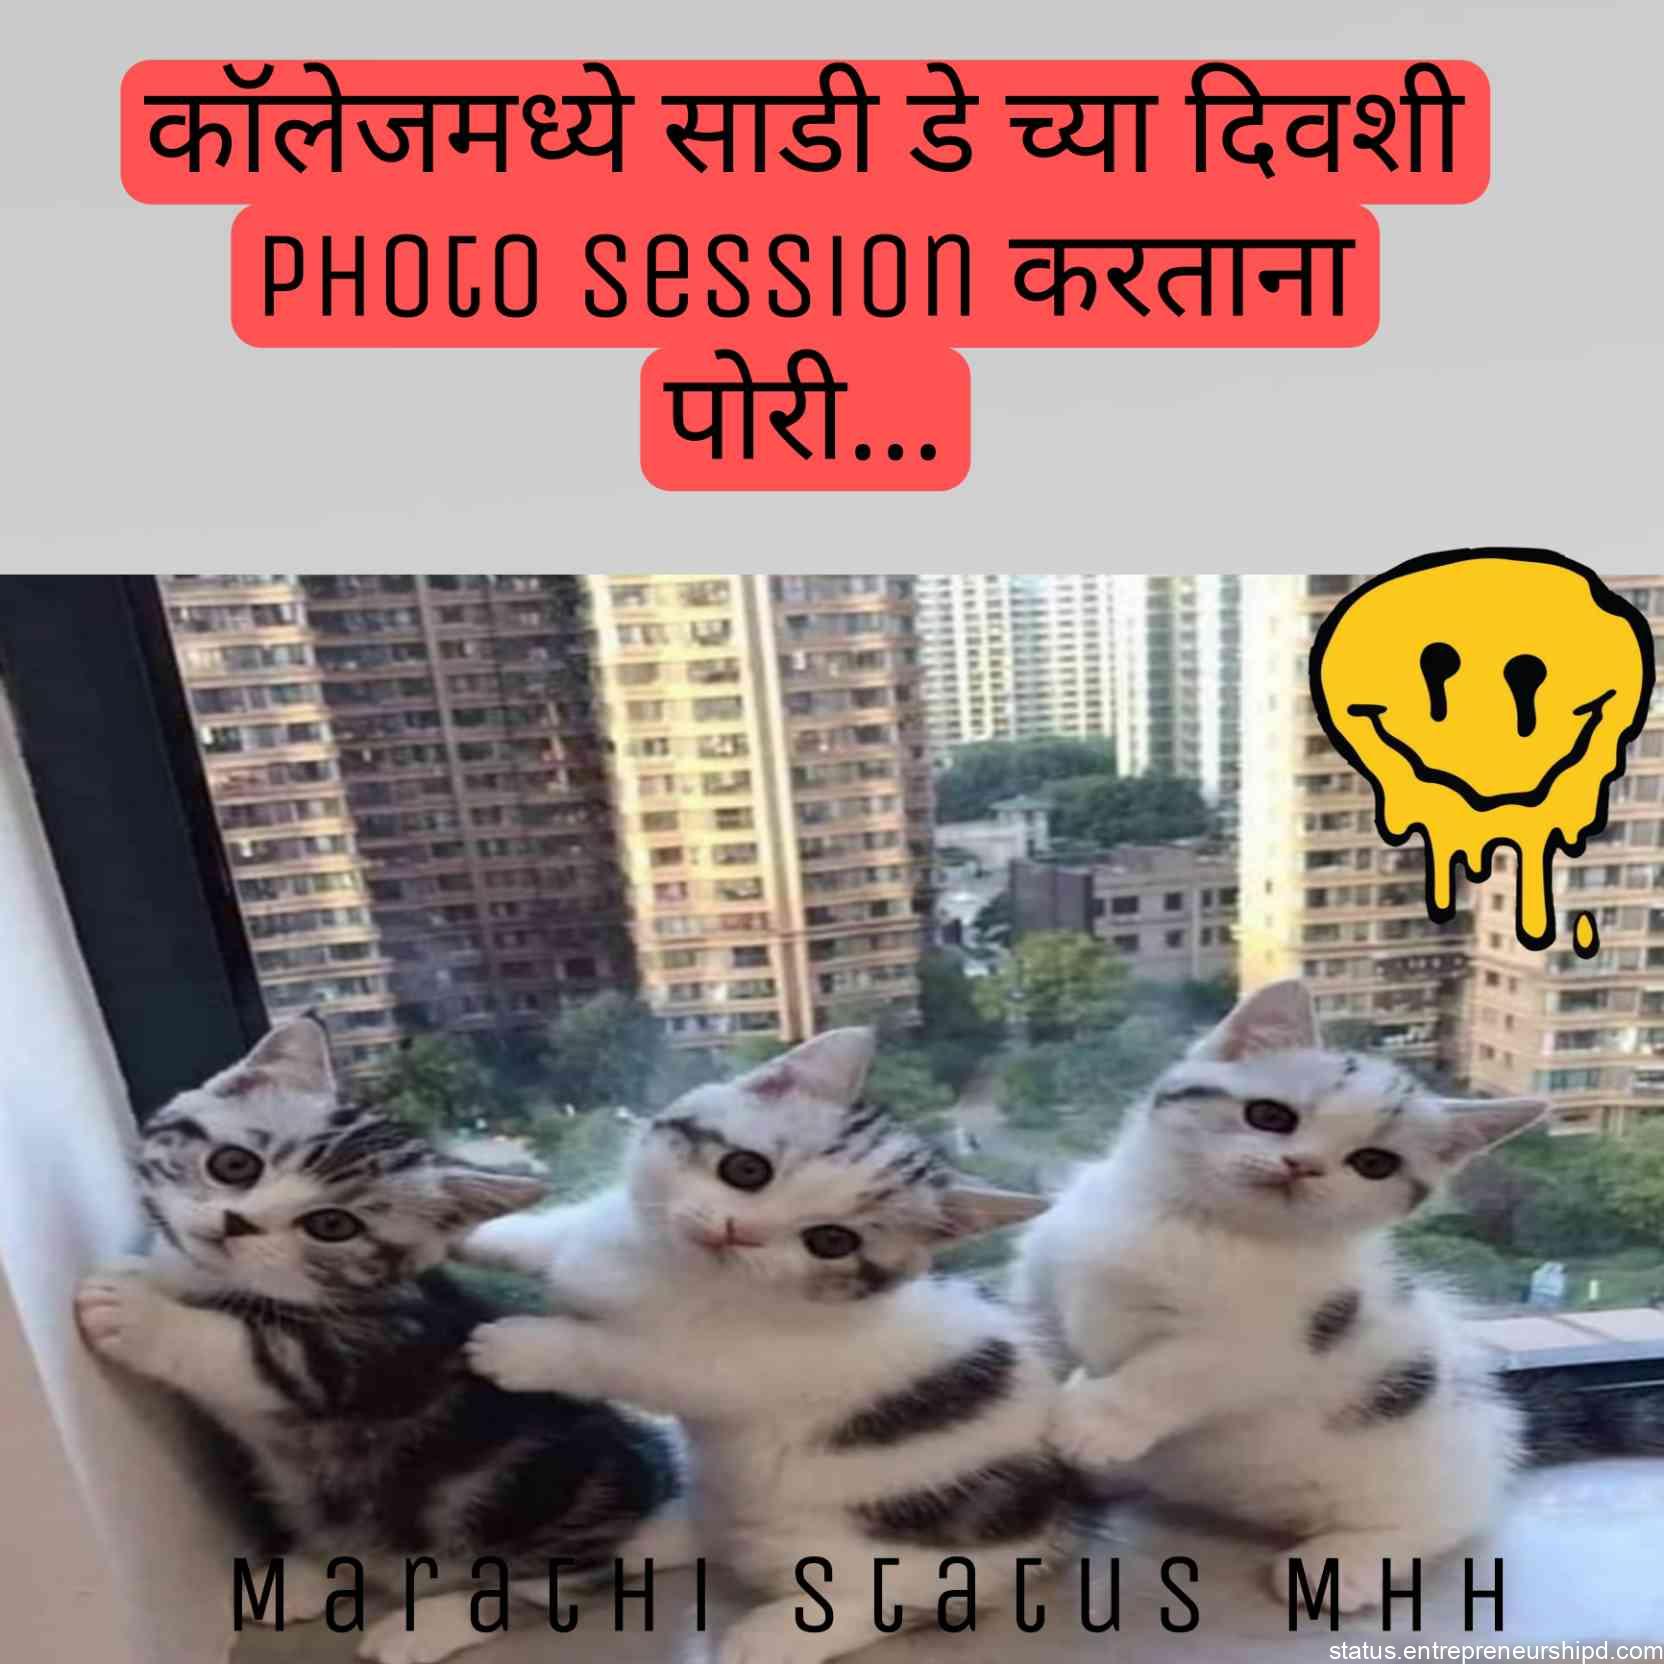 Marathi memes on girls photo poses